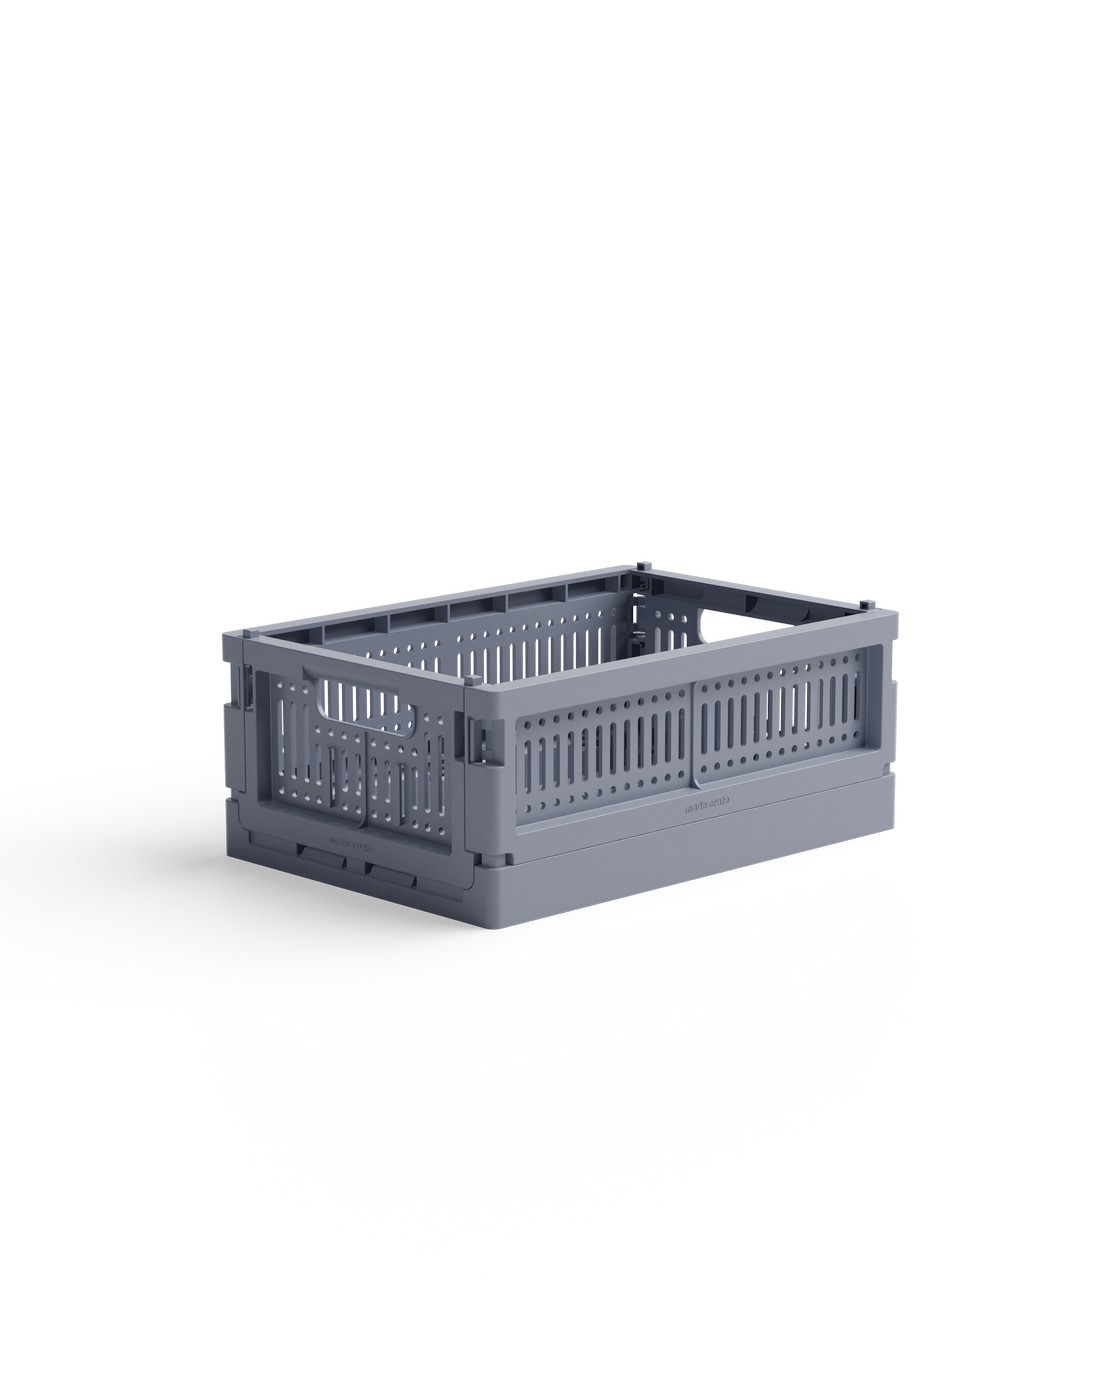 Skládací přepravka mini Made Crate  - blue grey